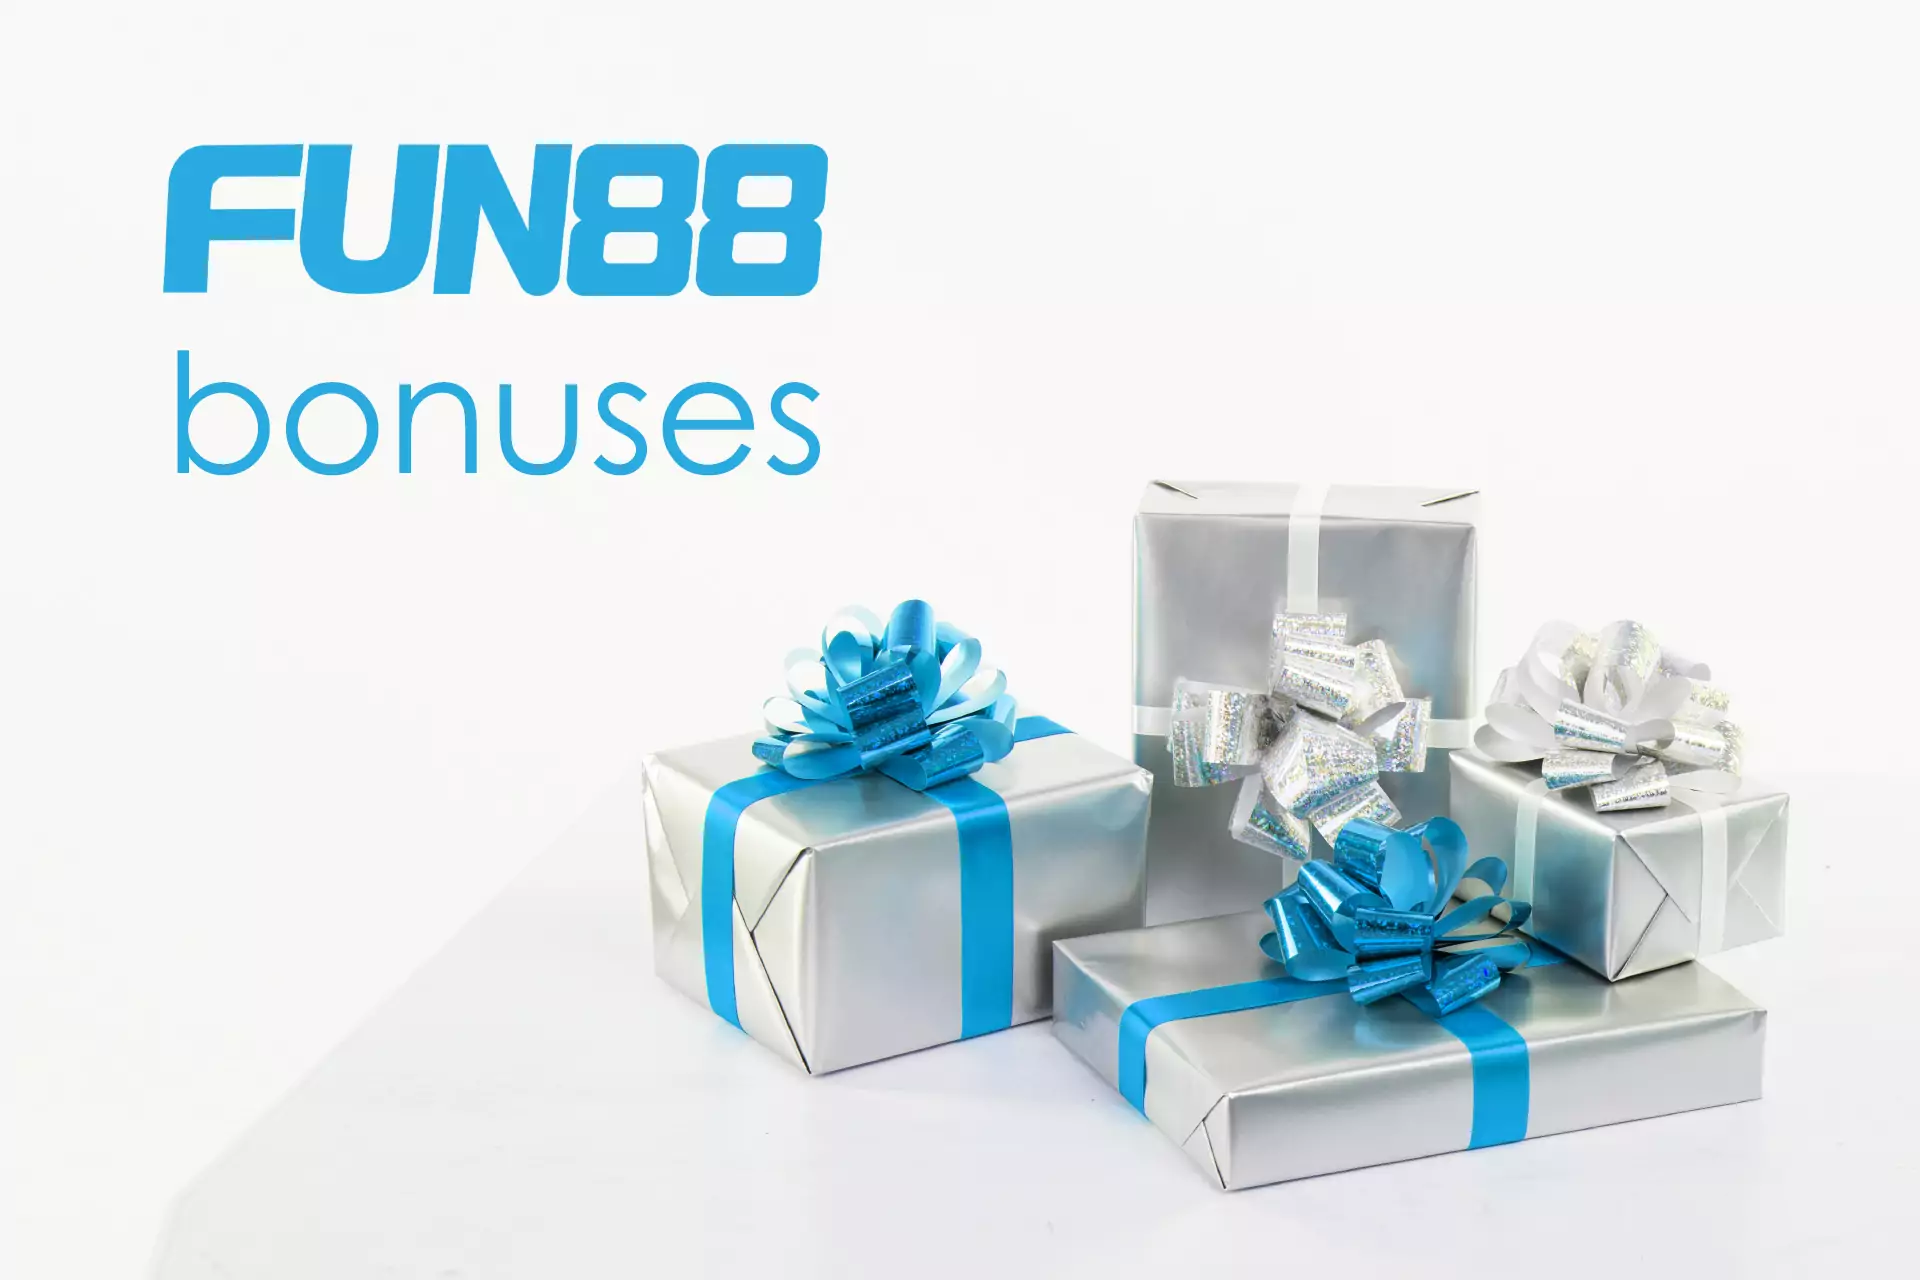 Make a deposit on Fun88 to get the first bonus.